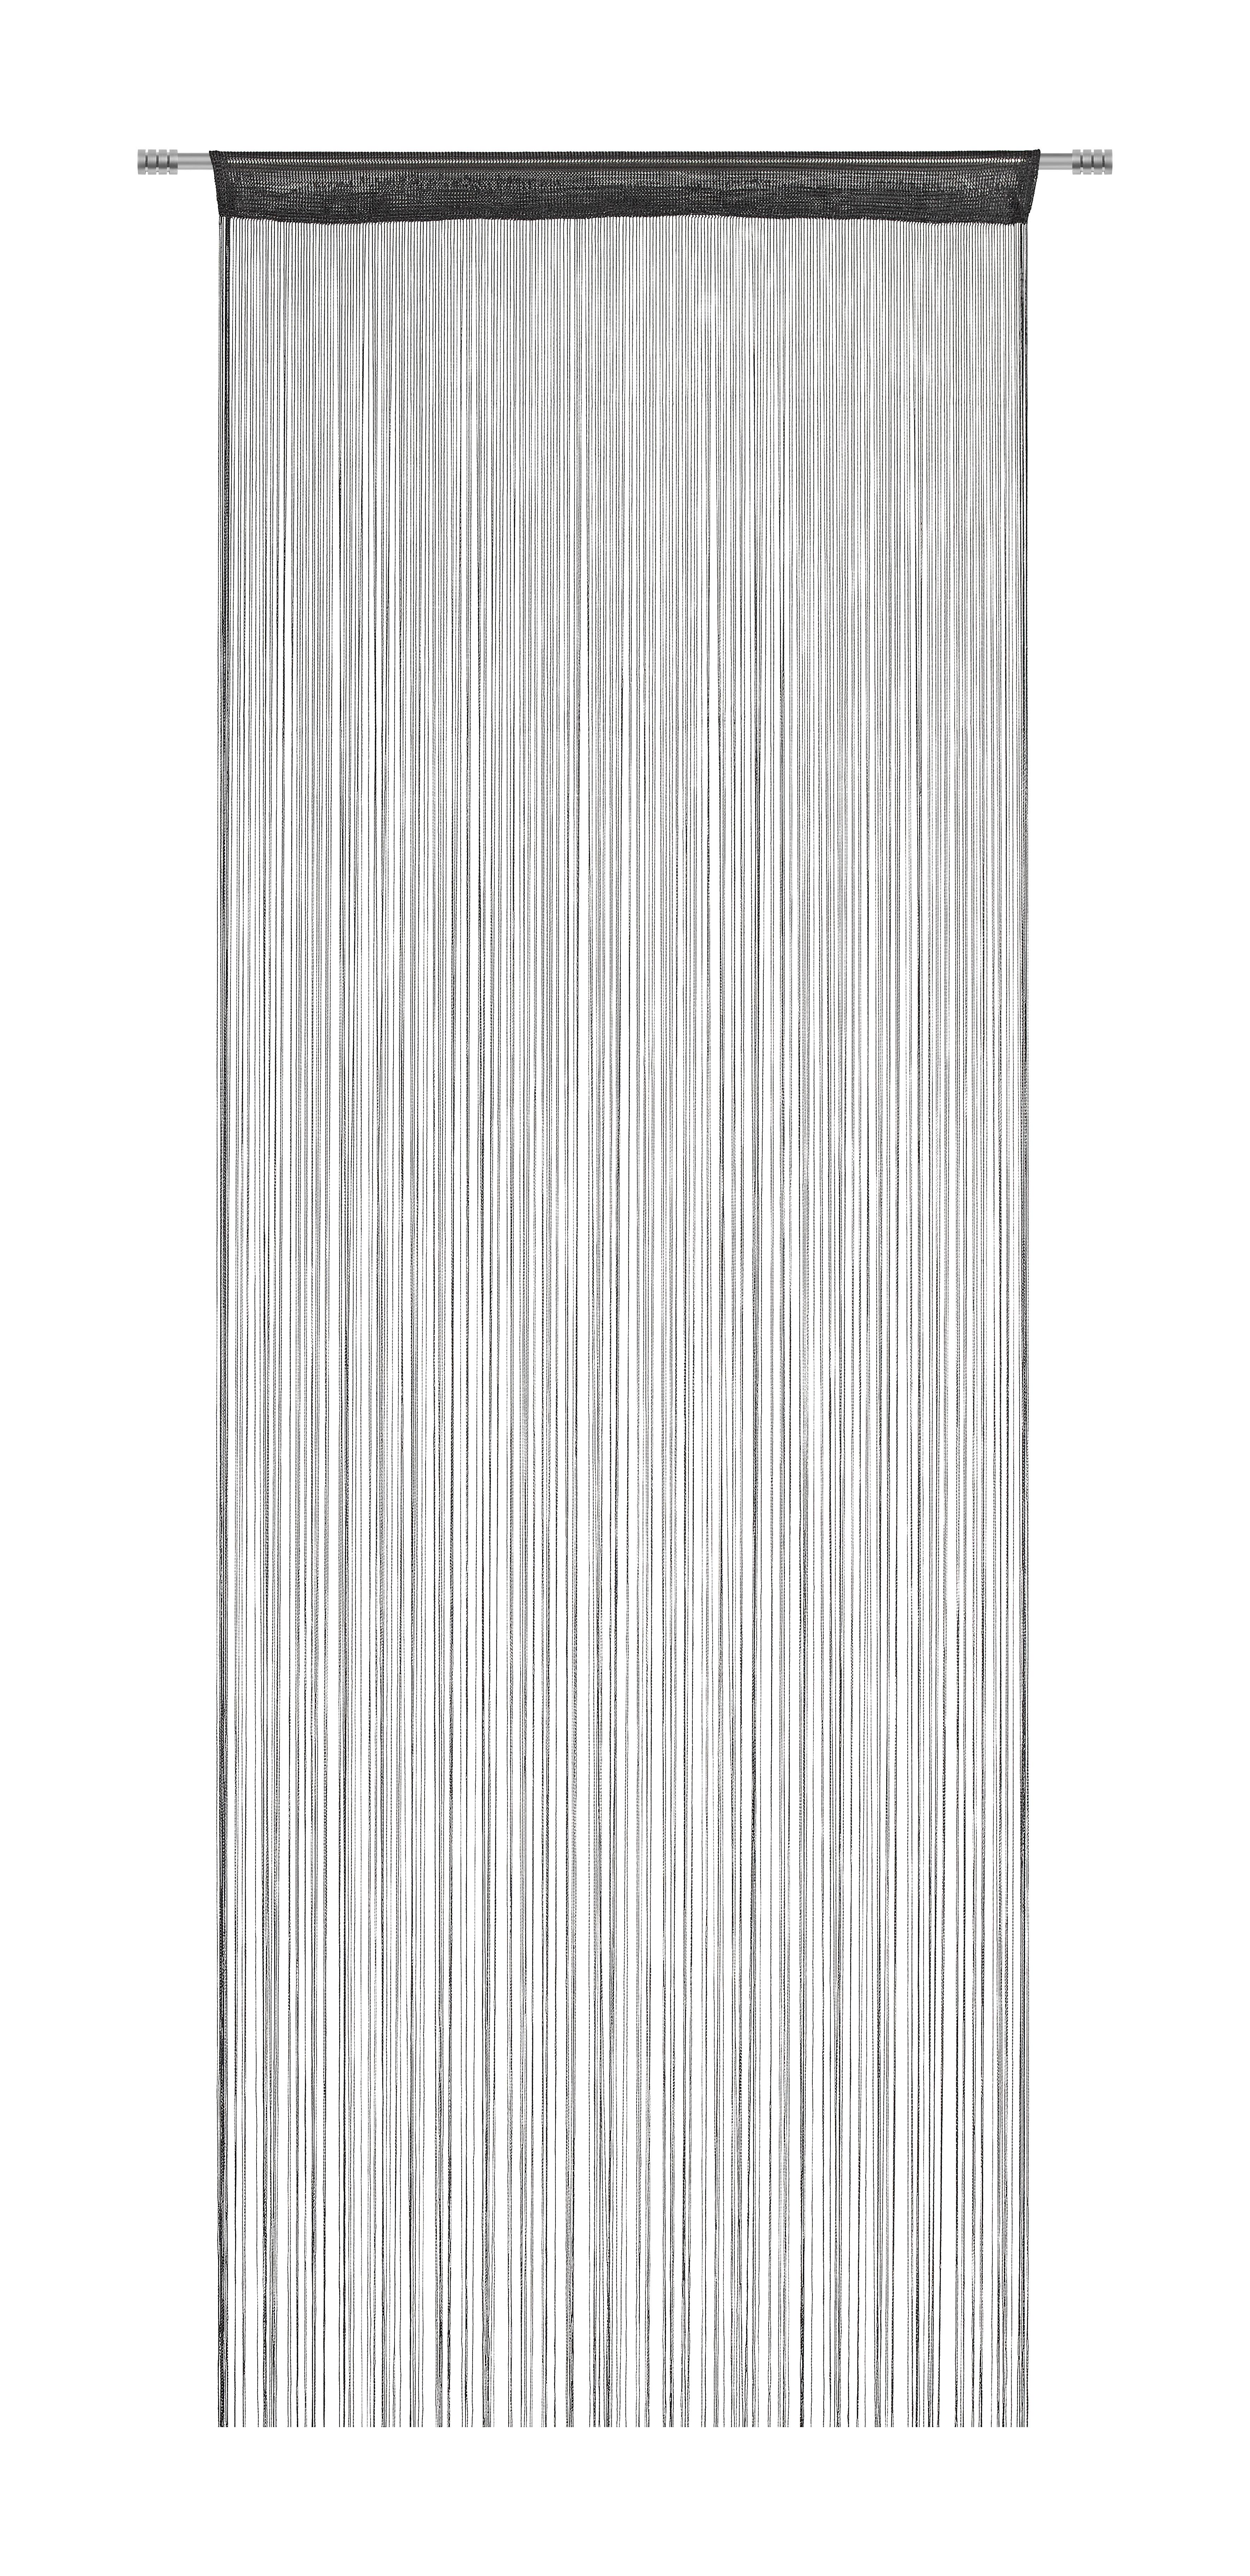 Fadenstore Franz in Schwarz ca. 90x245cm - Schwarz, Textil (90/245cm) - Modern Living